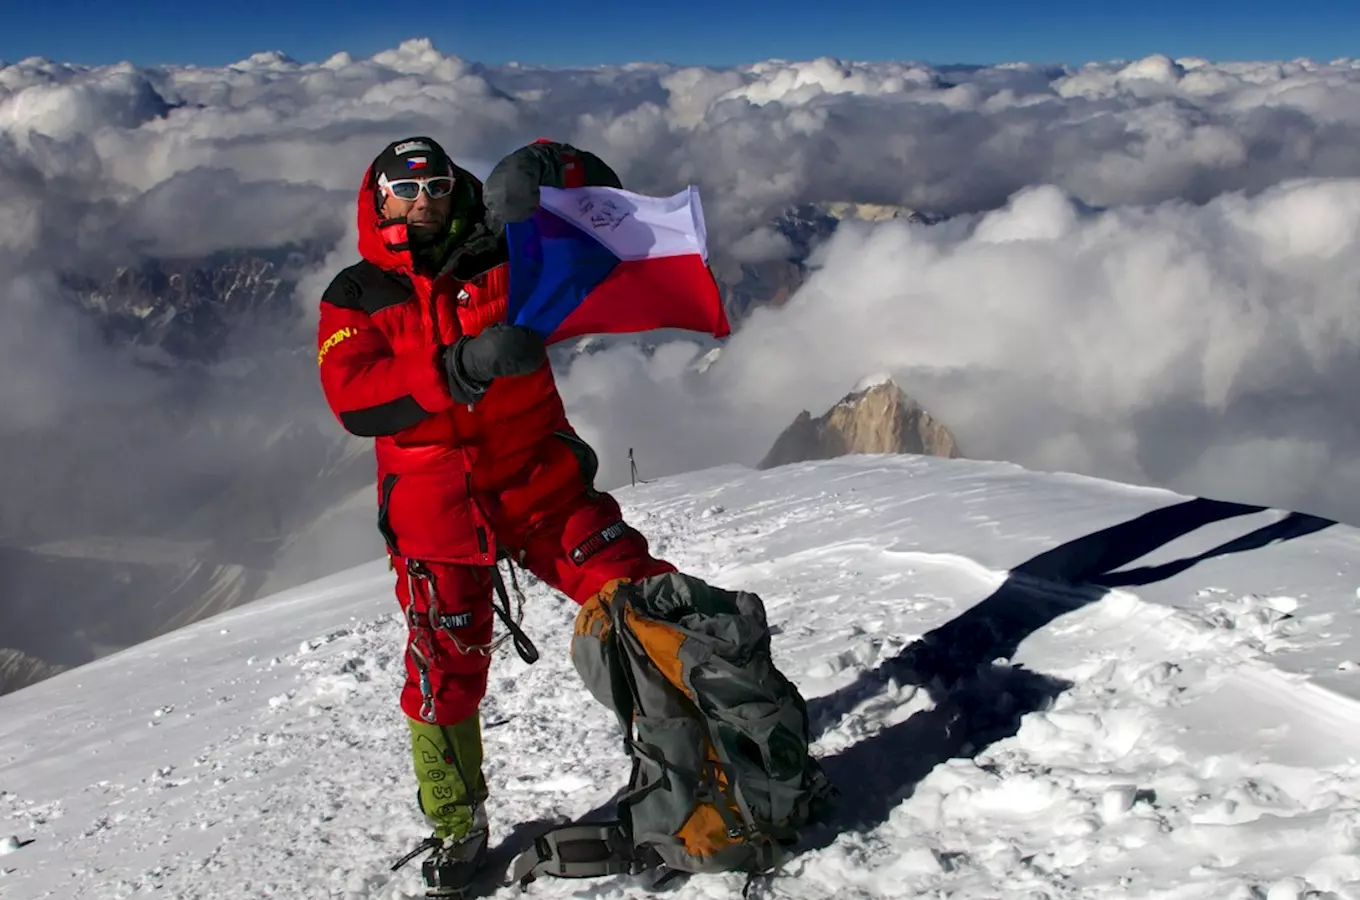 Mezinárodní festival alpinismu se bude konat v Praze na Smíchově